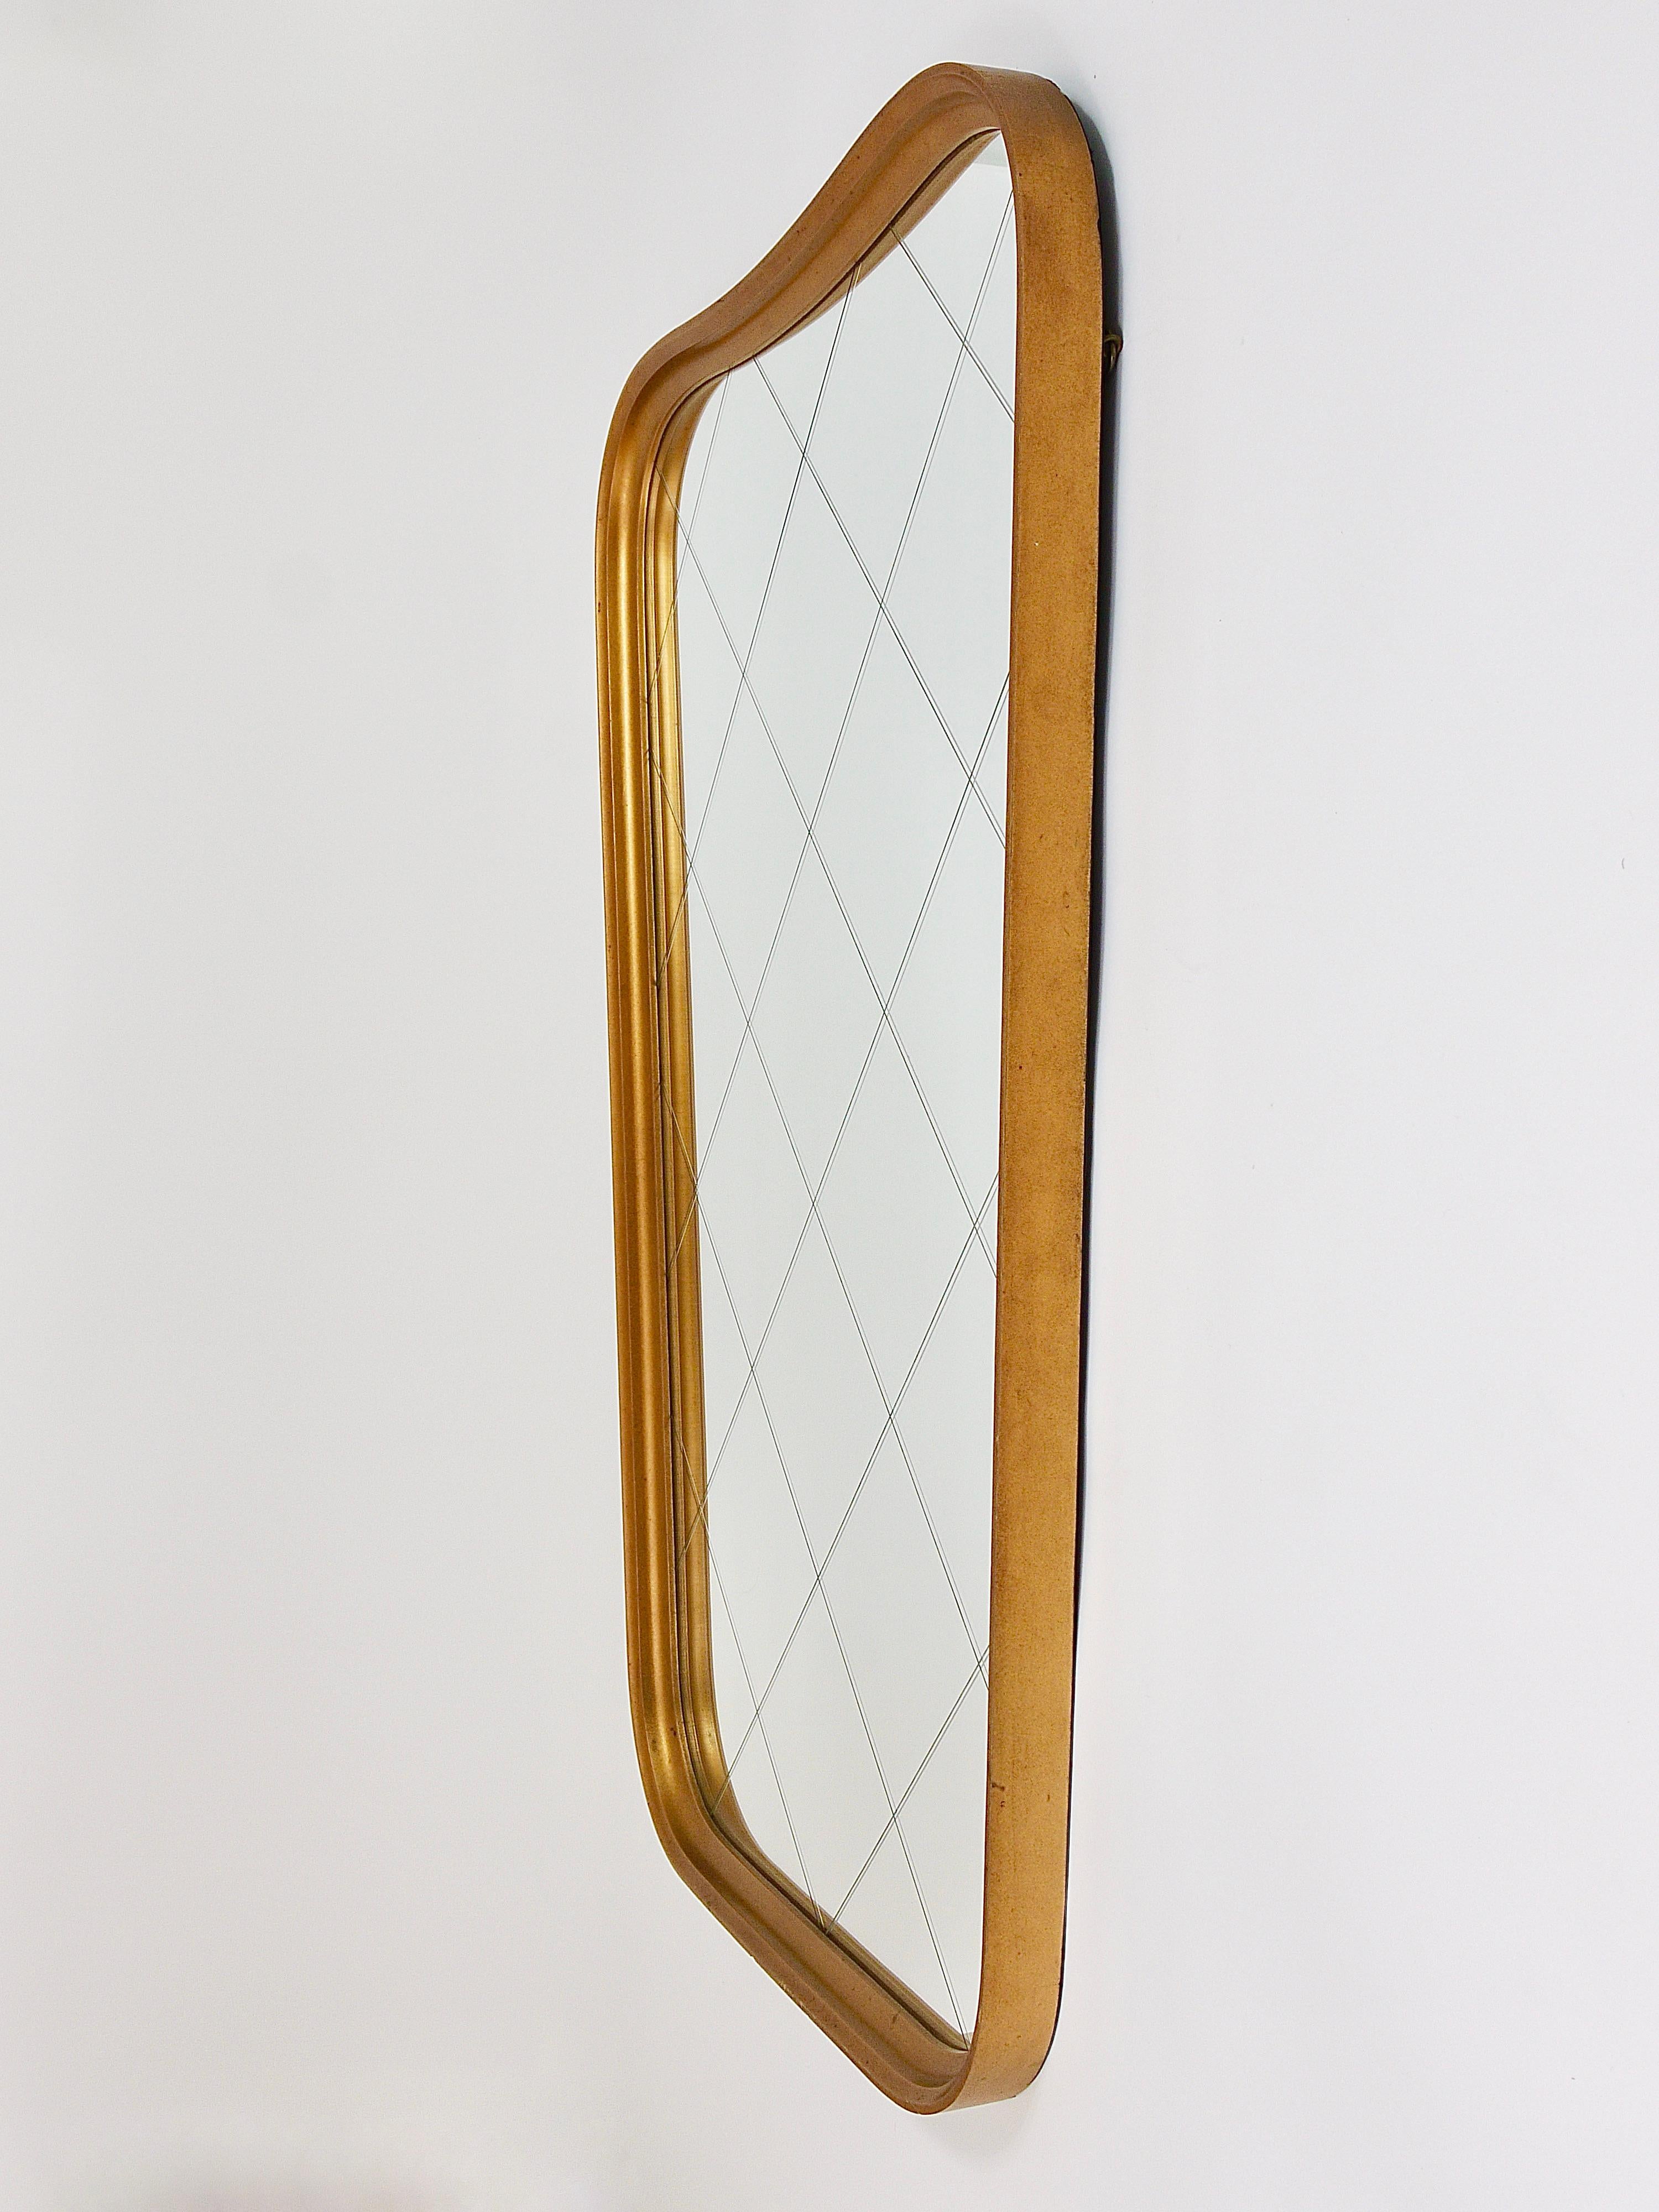 Ein charmanter österreichischer modernistischer Wandspiegel mit einem goldenen gebogenen Holzrahmen und einem schönen Karomuster auf dem Spiegelglas. Aus den 1950er Jahren. Dieser schöne Spiegel hat  eine schöne klassische Form und ist in sehr gutem